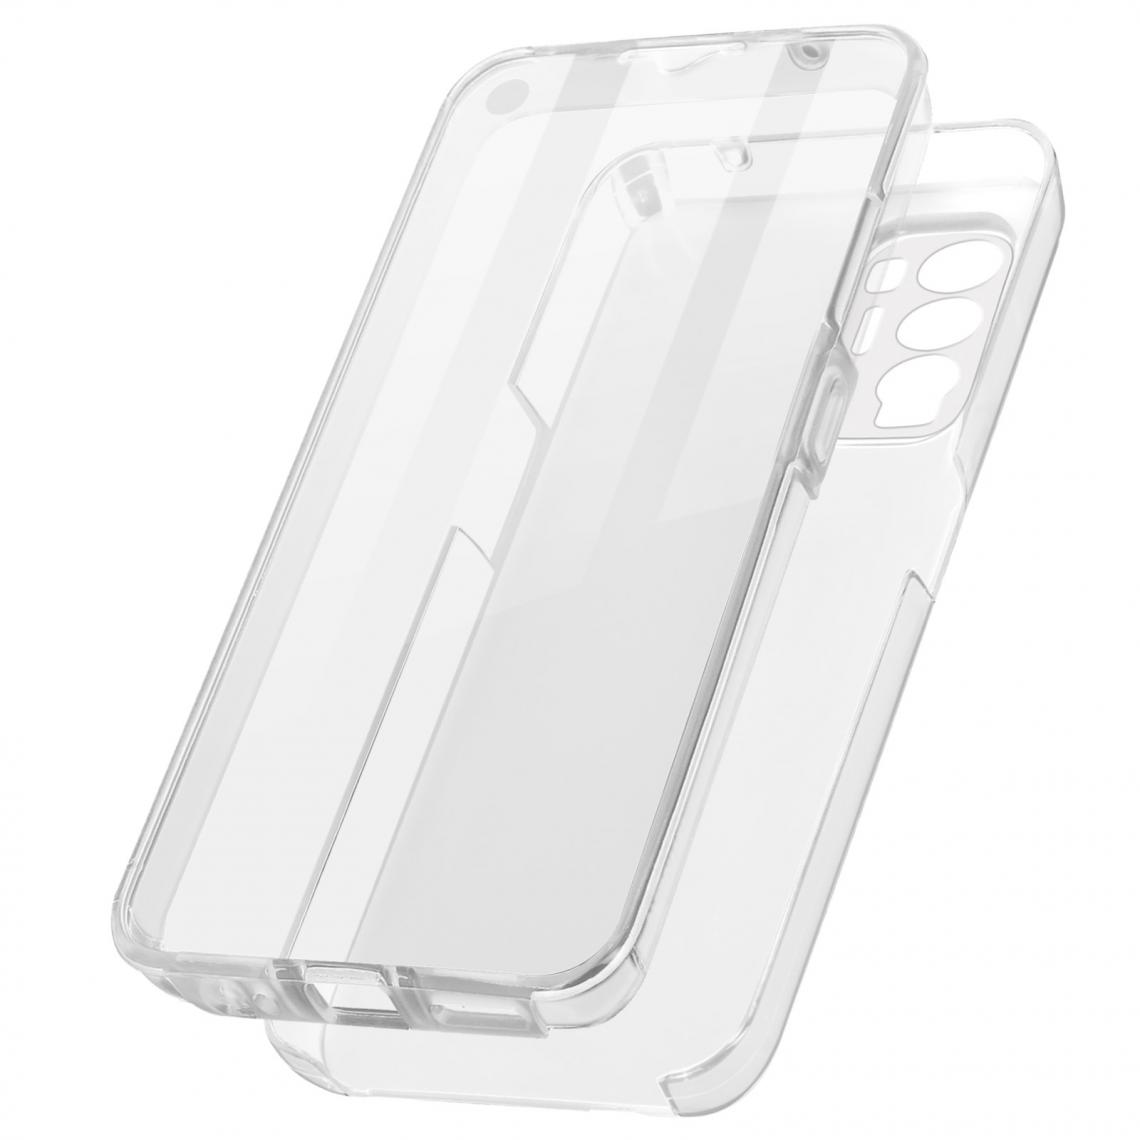 Avizar - Coque Oppo Find X3 Neo Arrière Rigide et Avant Souple - transparent - Coque, étui smartphone